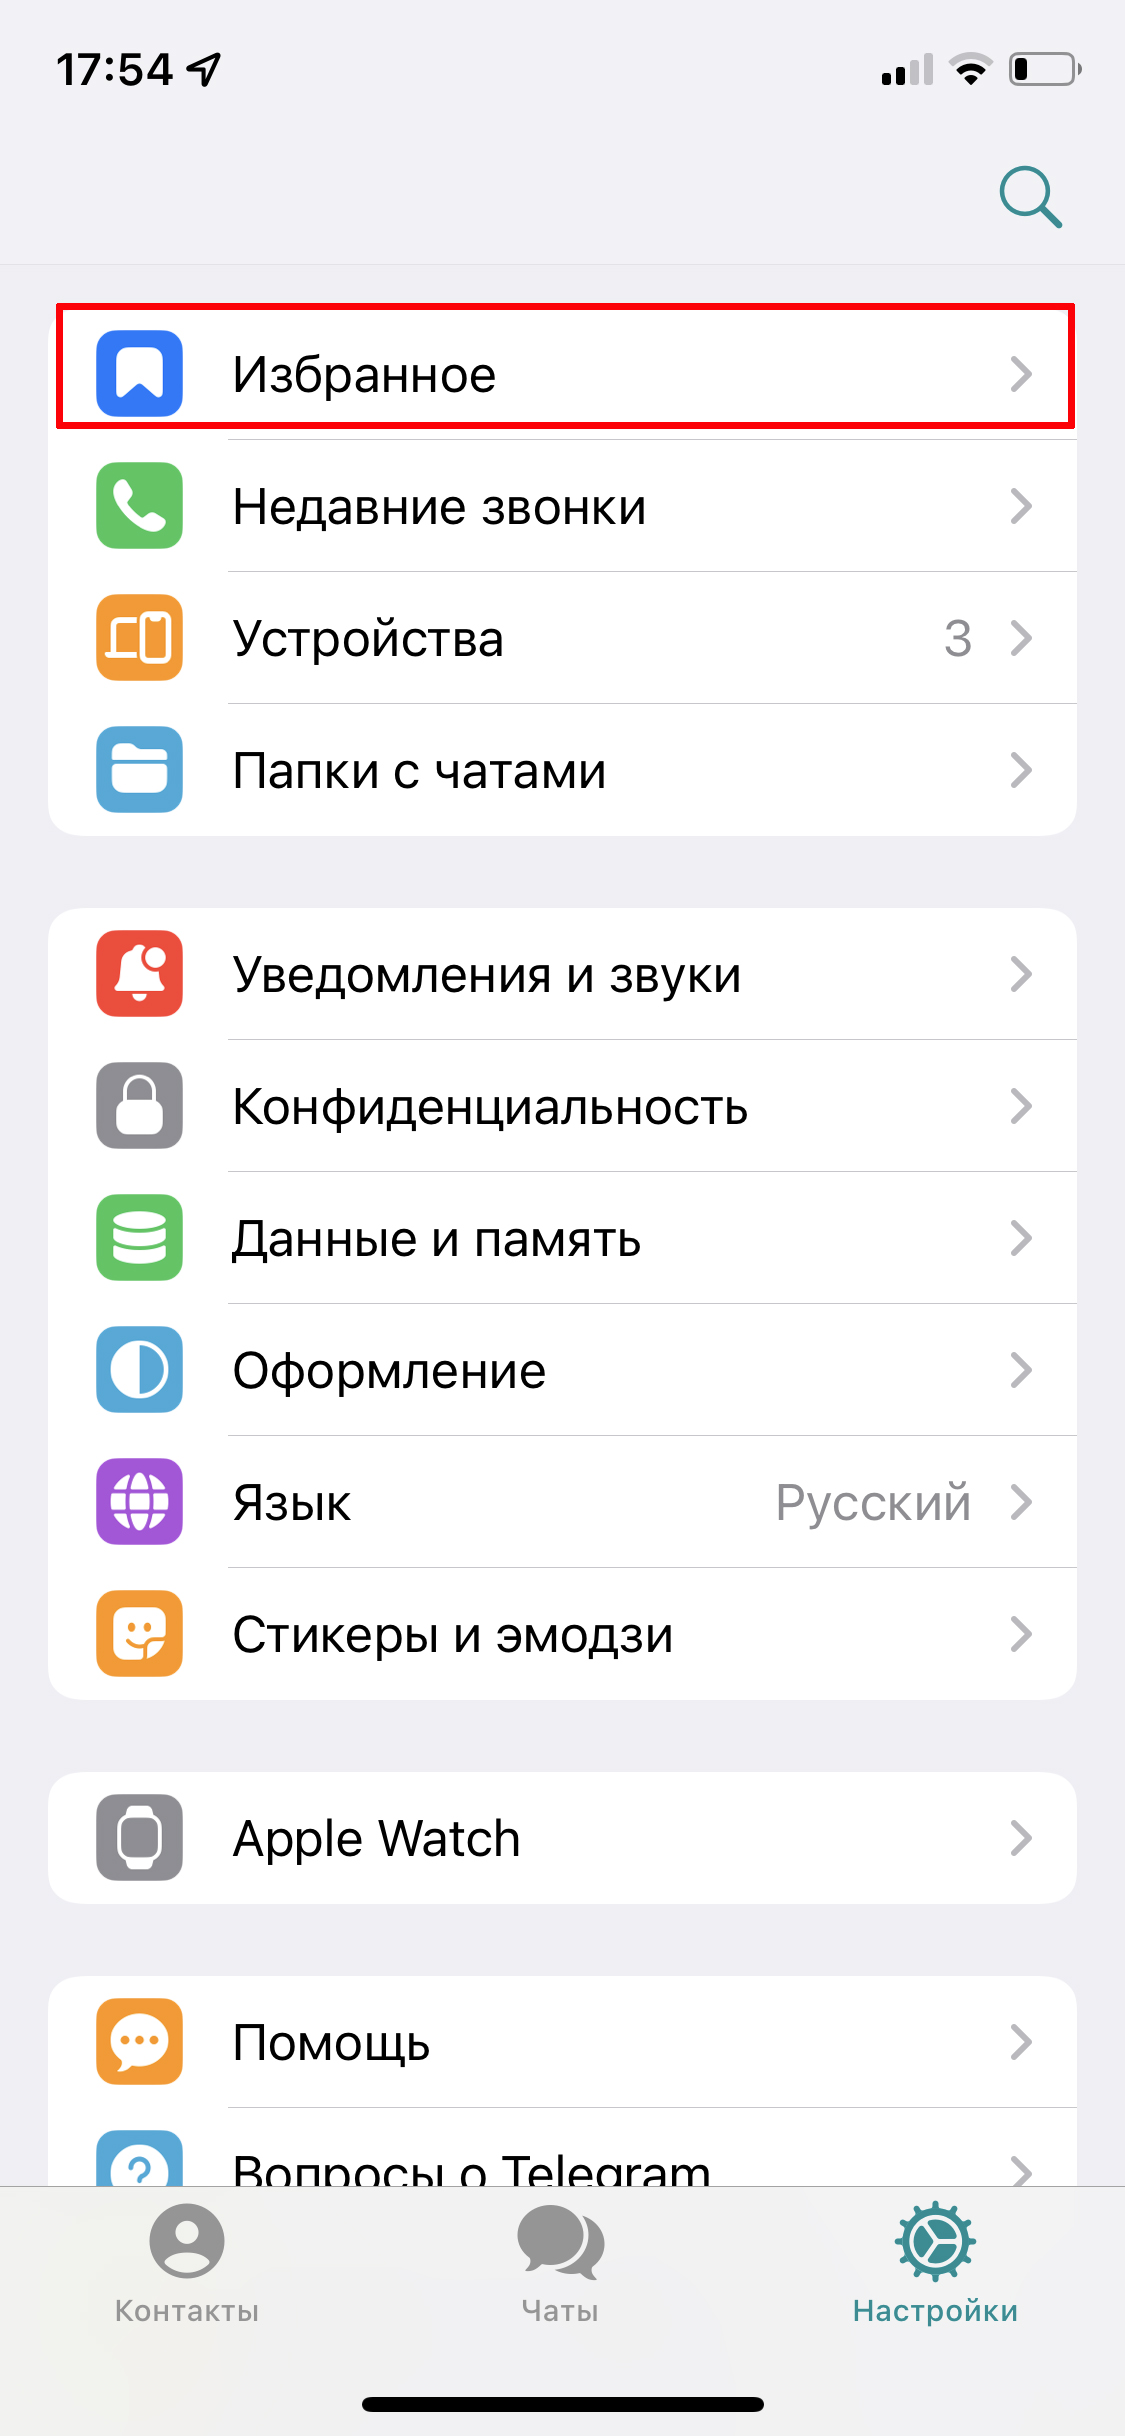 Как настроить телеграмм на русский язык на андроиде телефоне фото 20